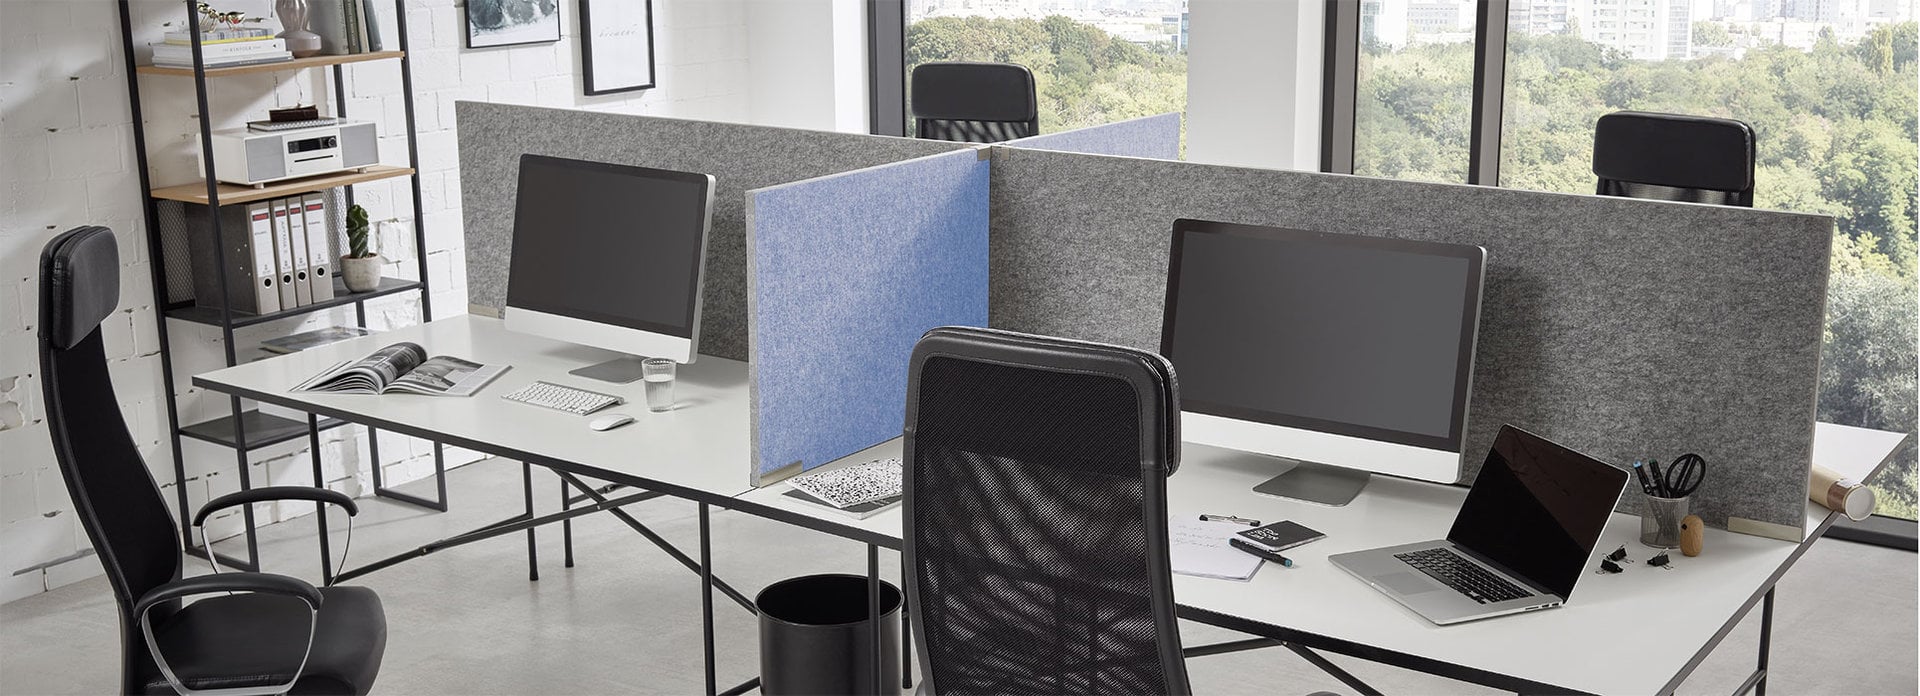 ropimex Sicht- und Schallschutz DIVI smart Schreibtischaufsätze im Büro